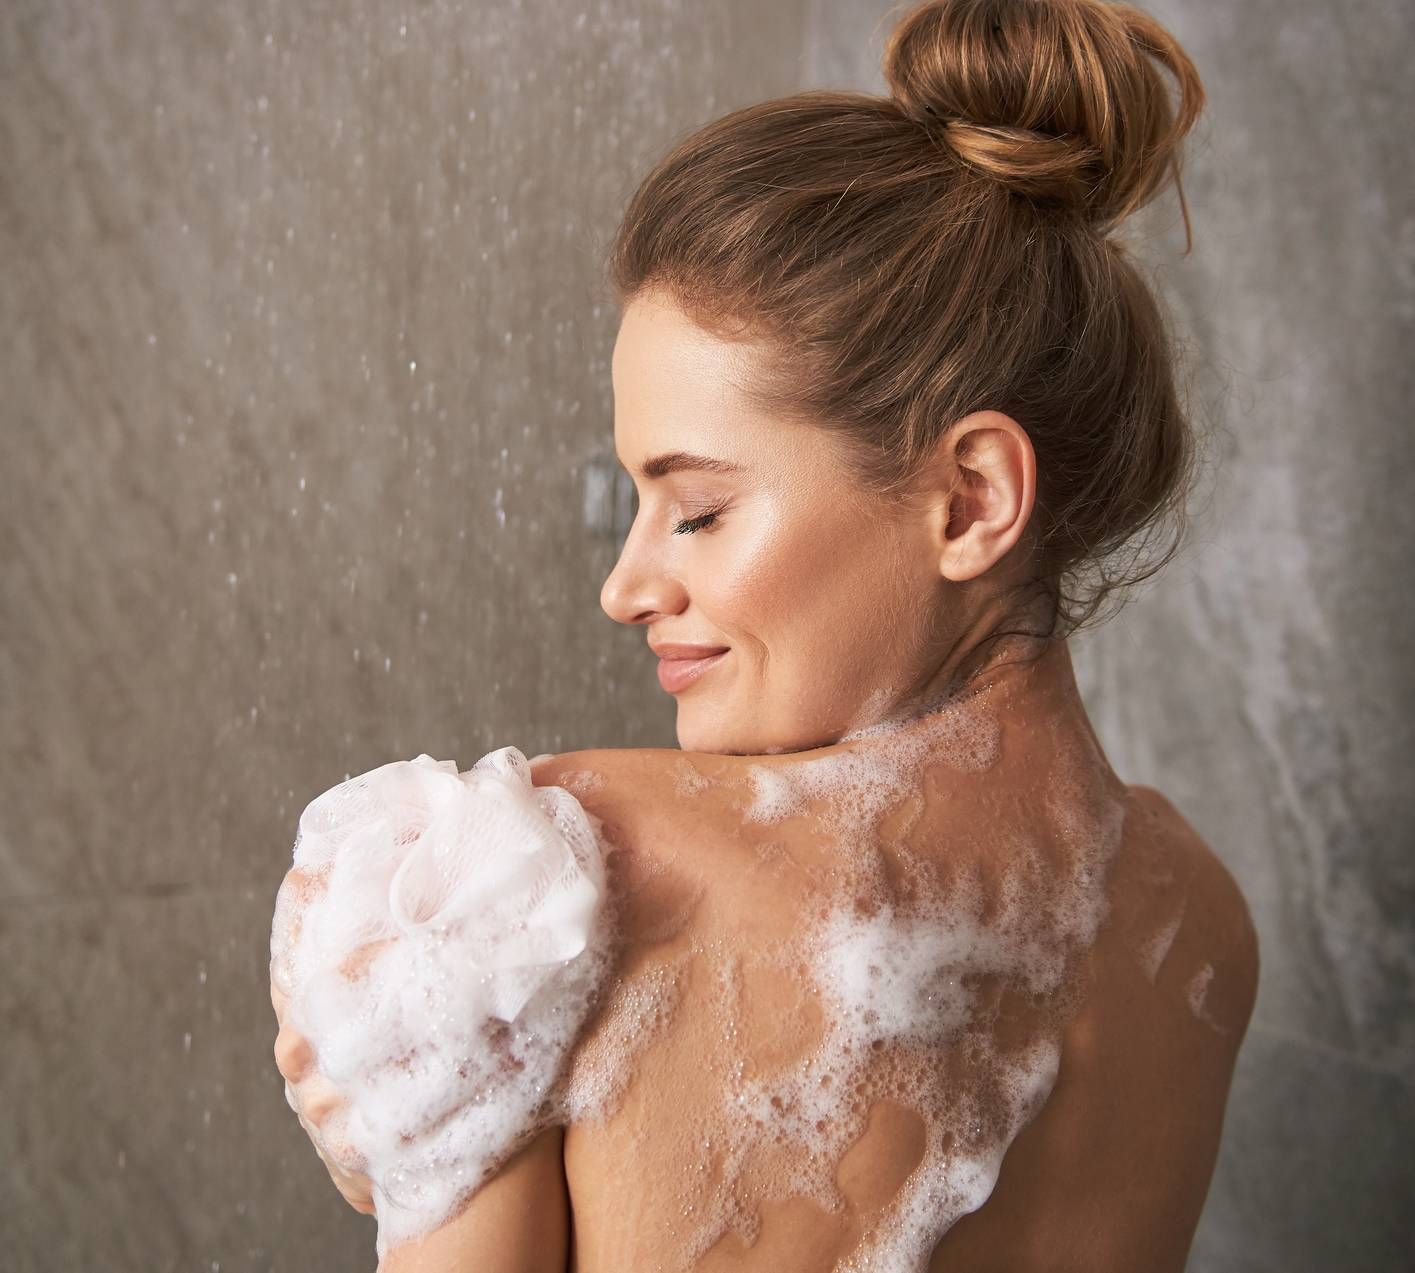 Orden correcto limpieza ducha